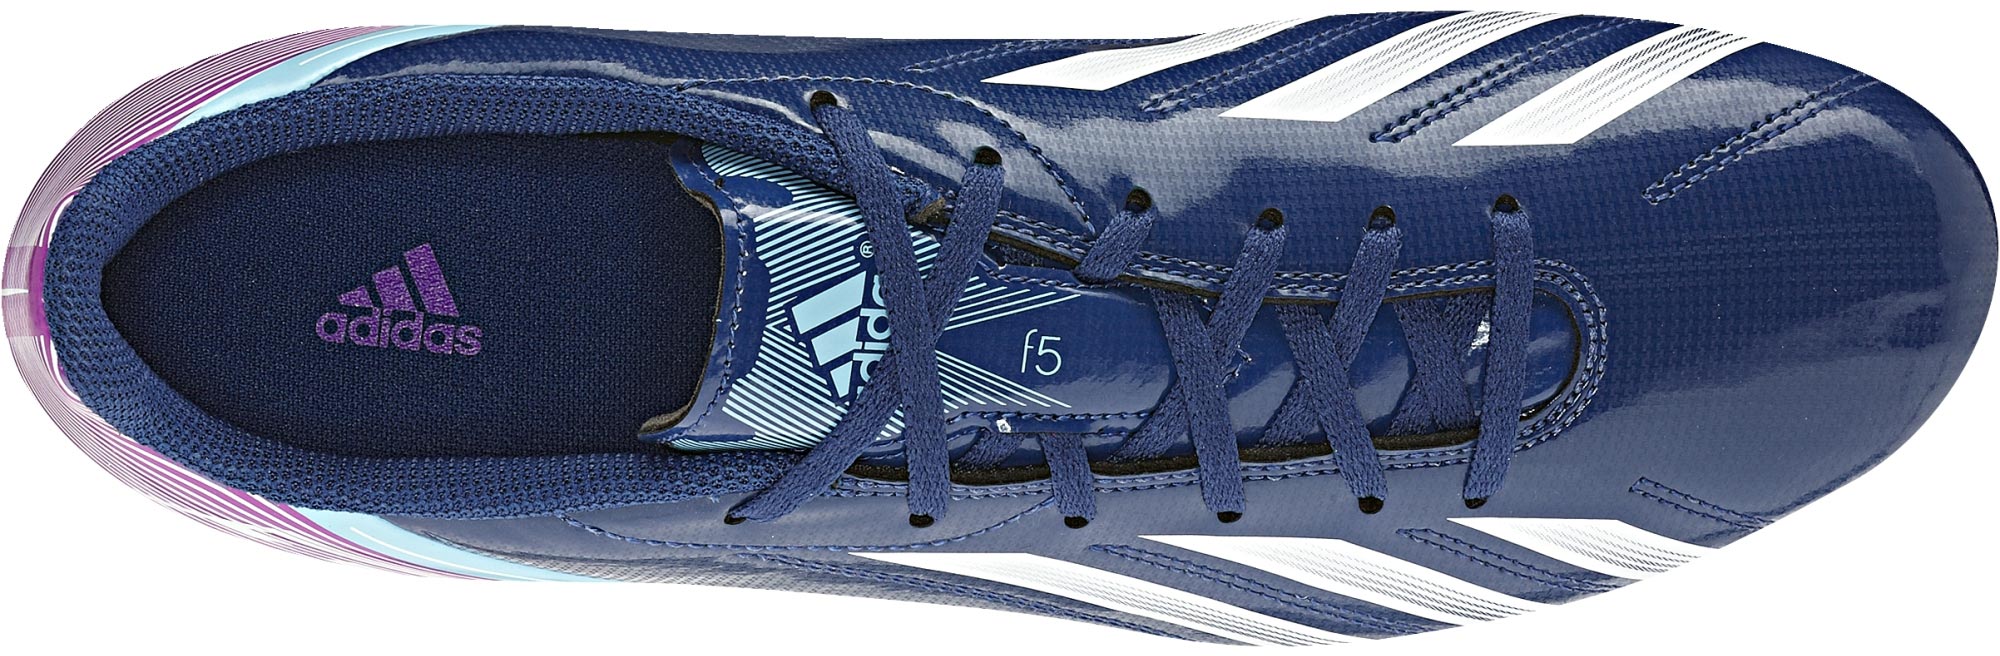 F5 TRX FG - Men's football boots